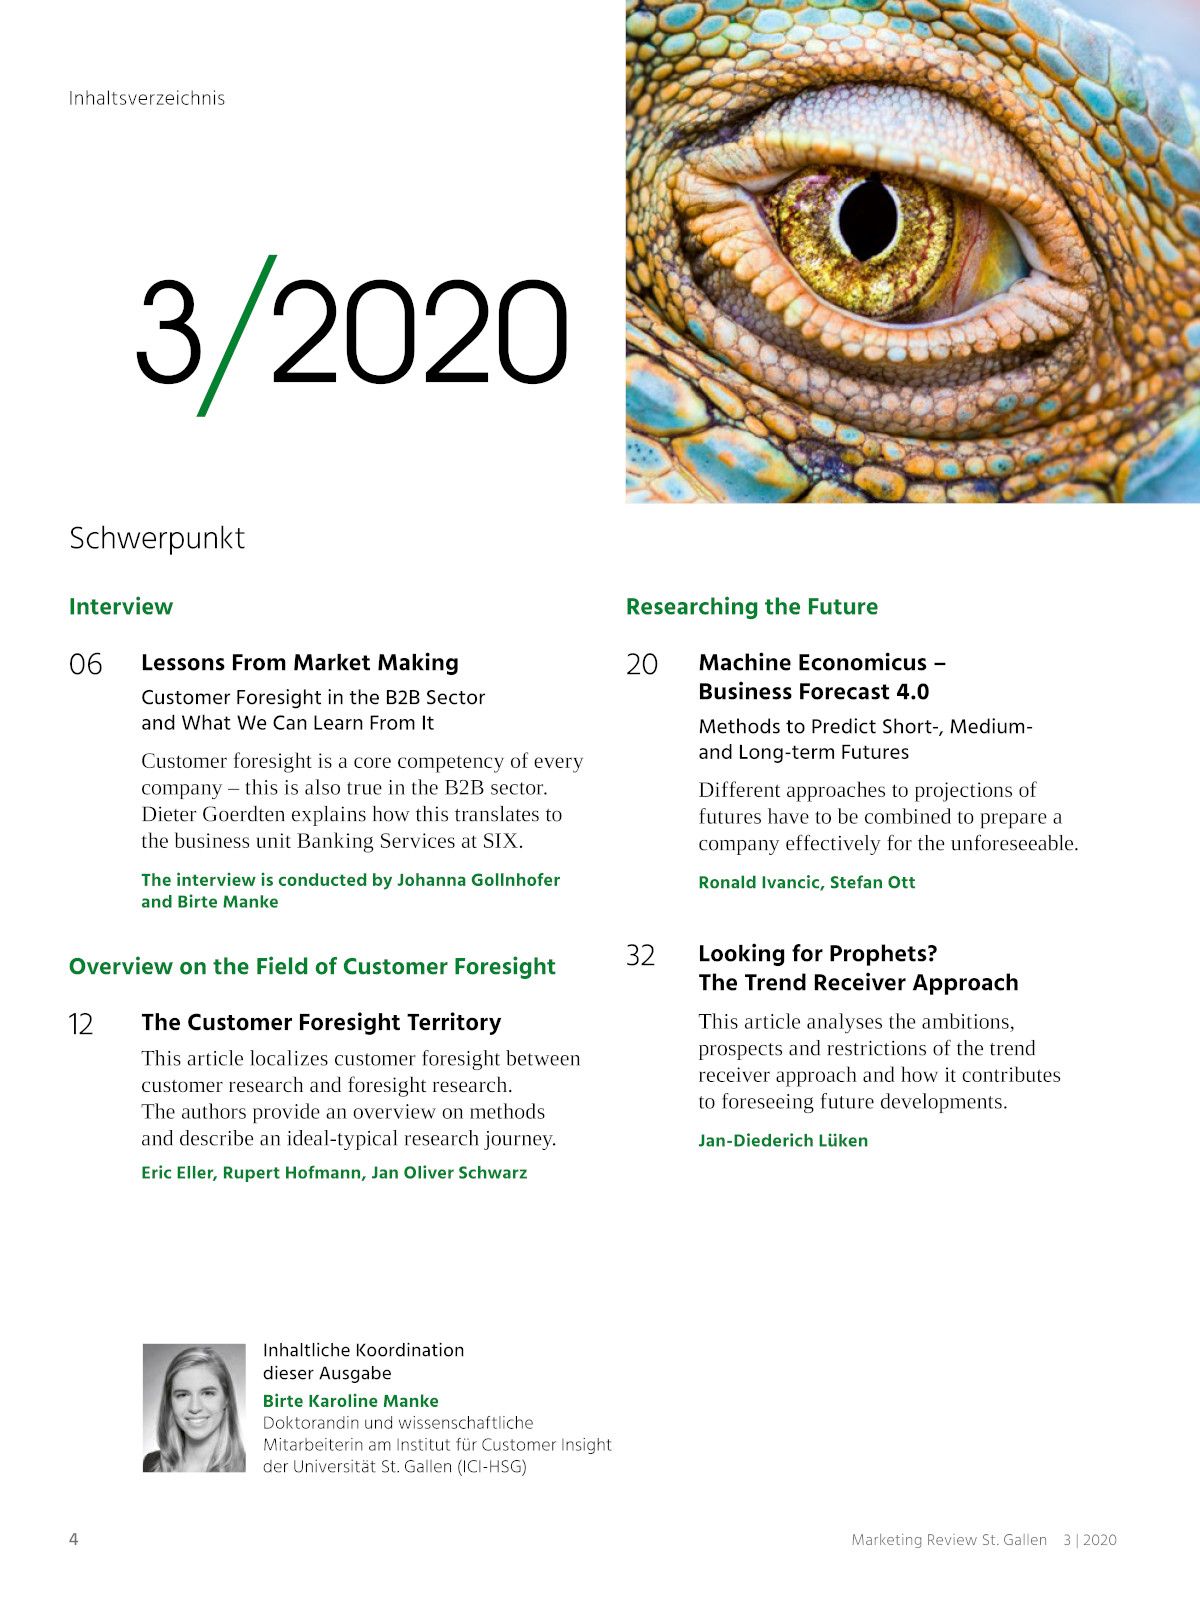 Marketing Review 3-2020 Inhaltsverzeichnis